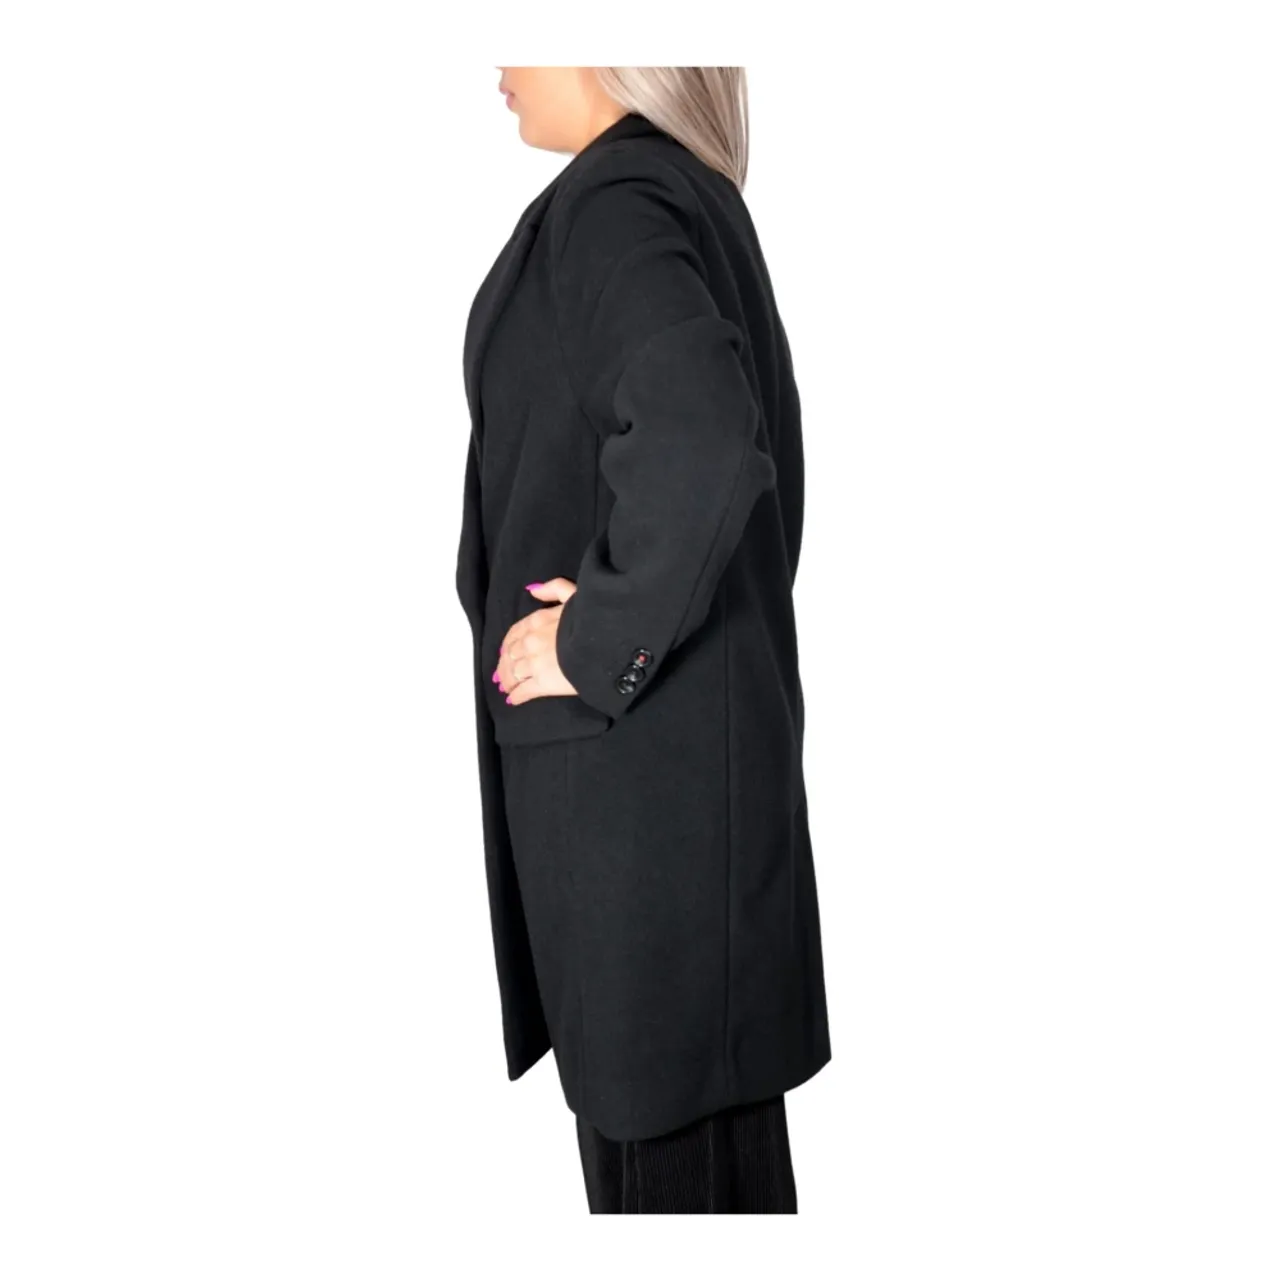 Hugo Boss , Relaxed Fit Womens Coat in Black ,Black female, Sizes: